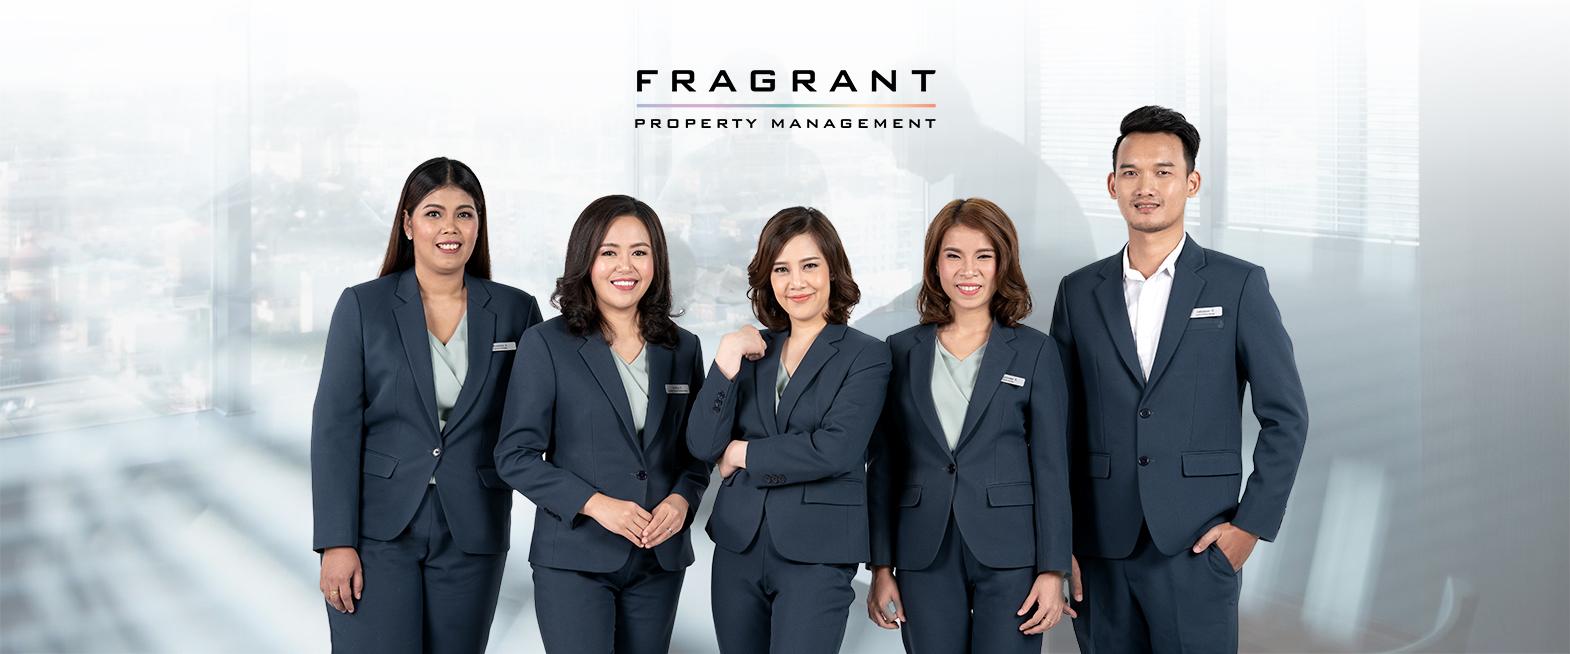 Fragrant Property Management